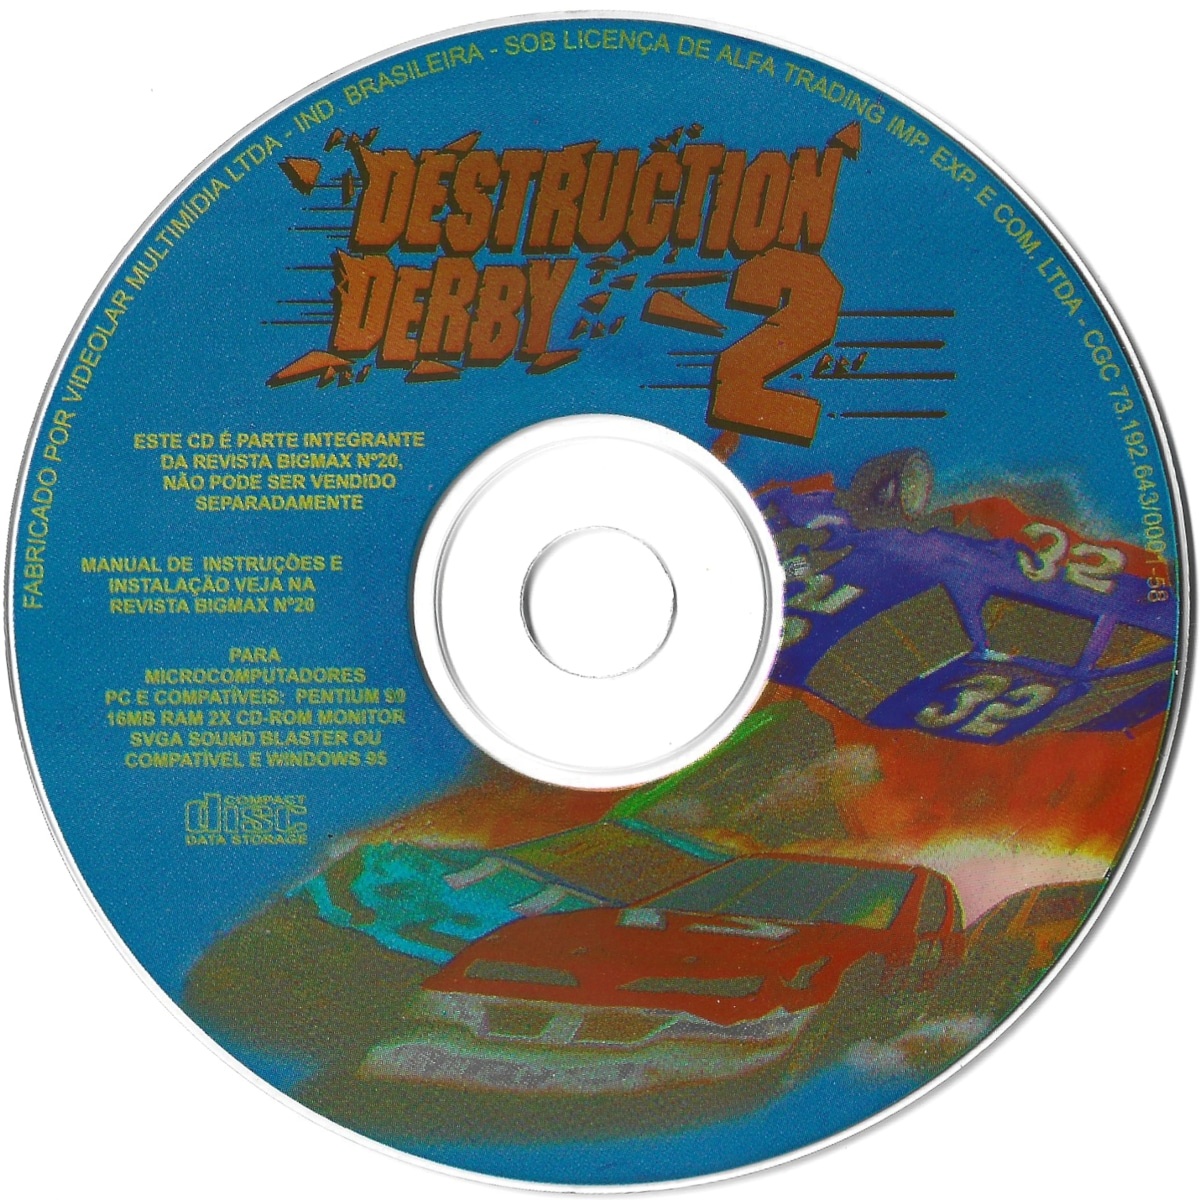 Destruction Derby 2 cover